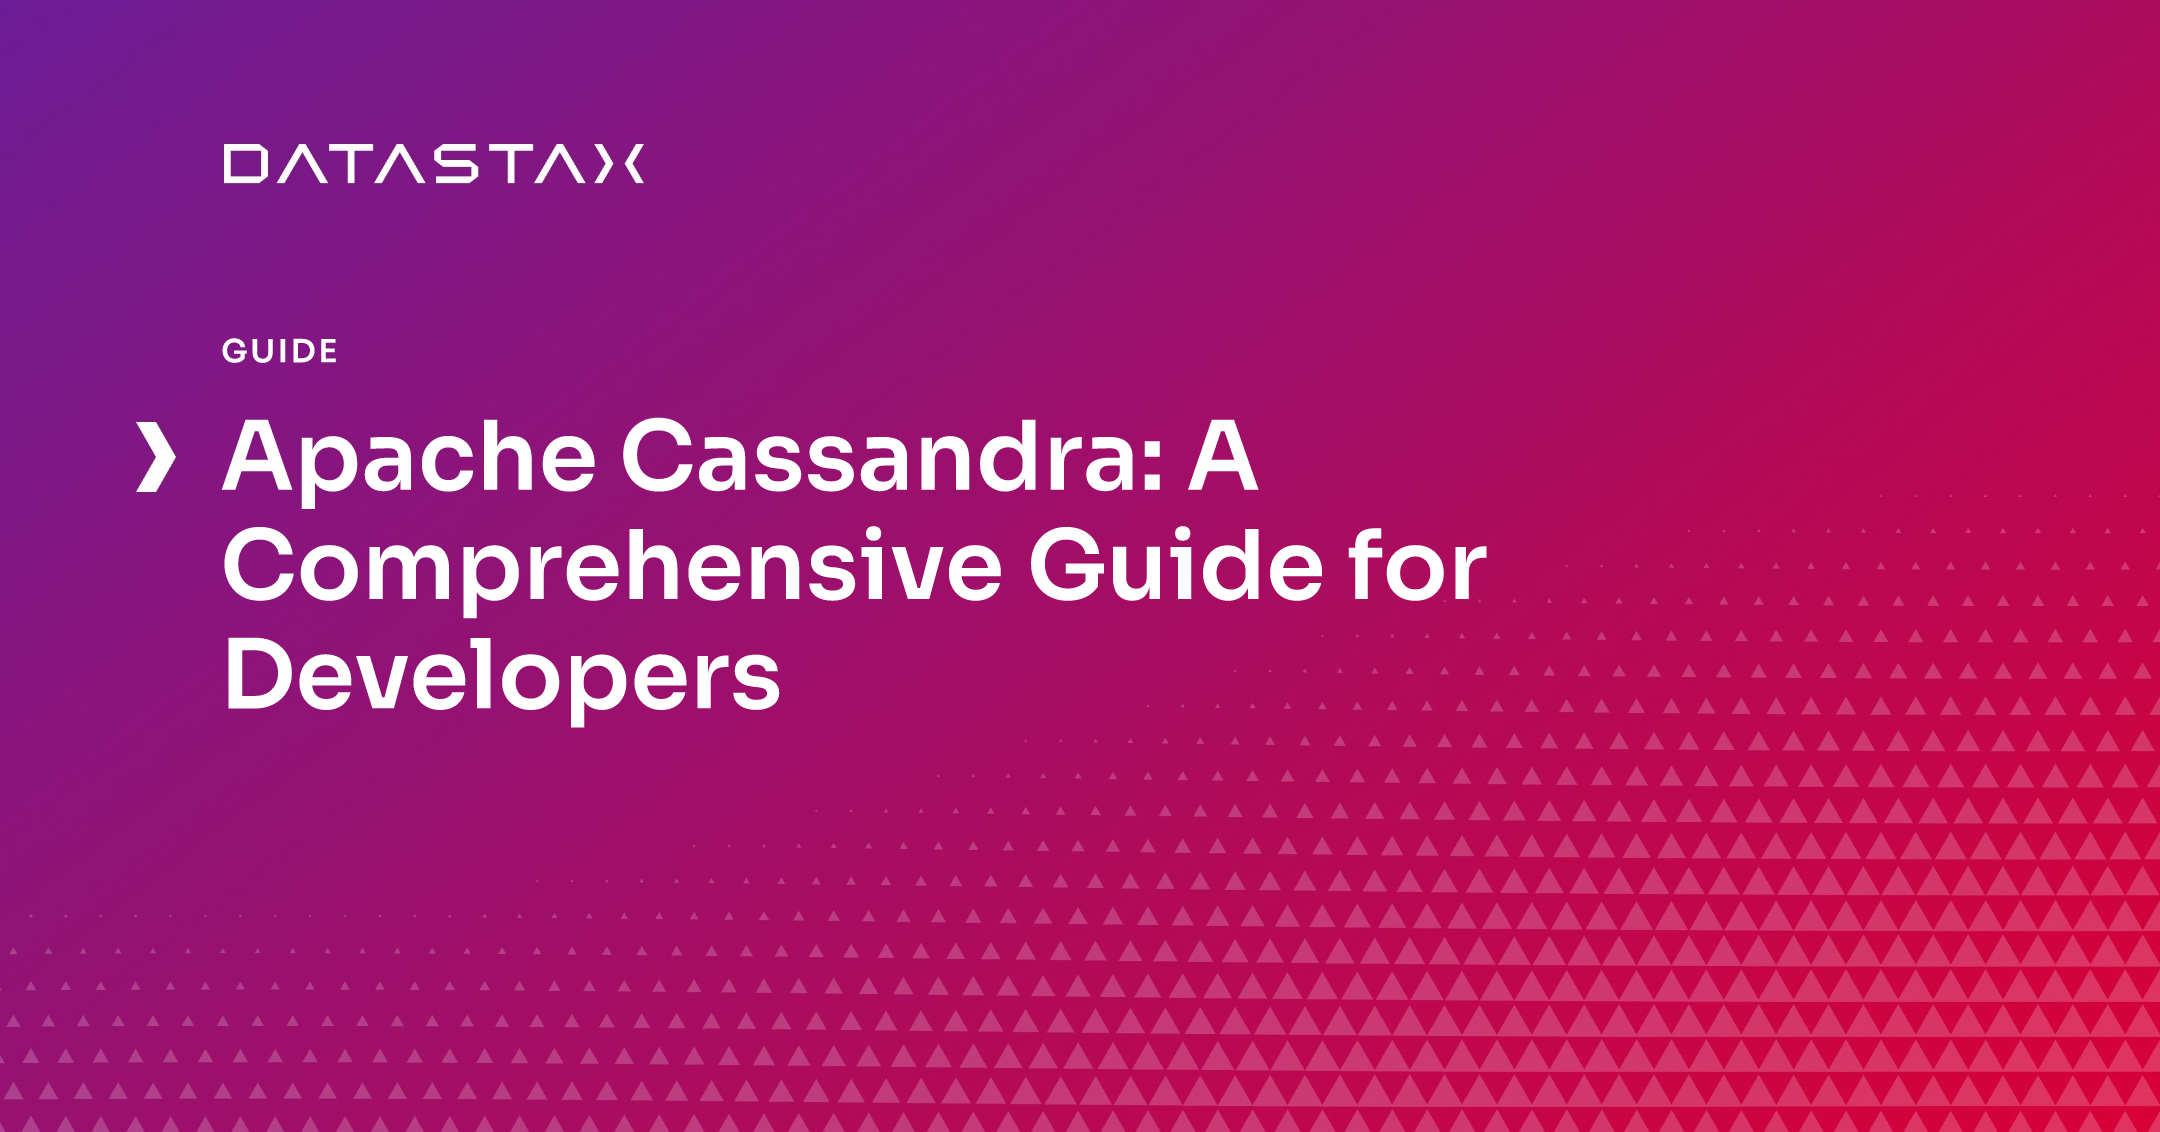 Apache Cassandra: A Comprehensive Guide for Developers